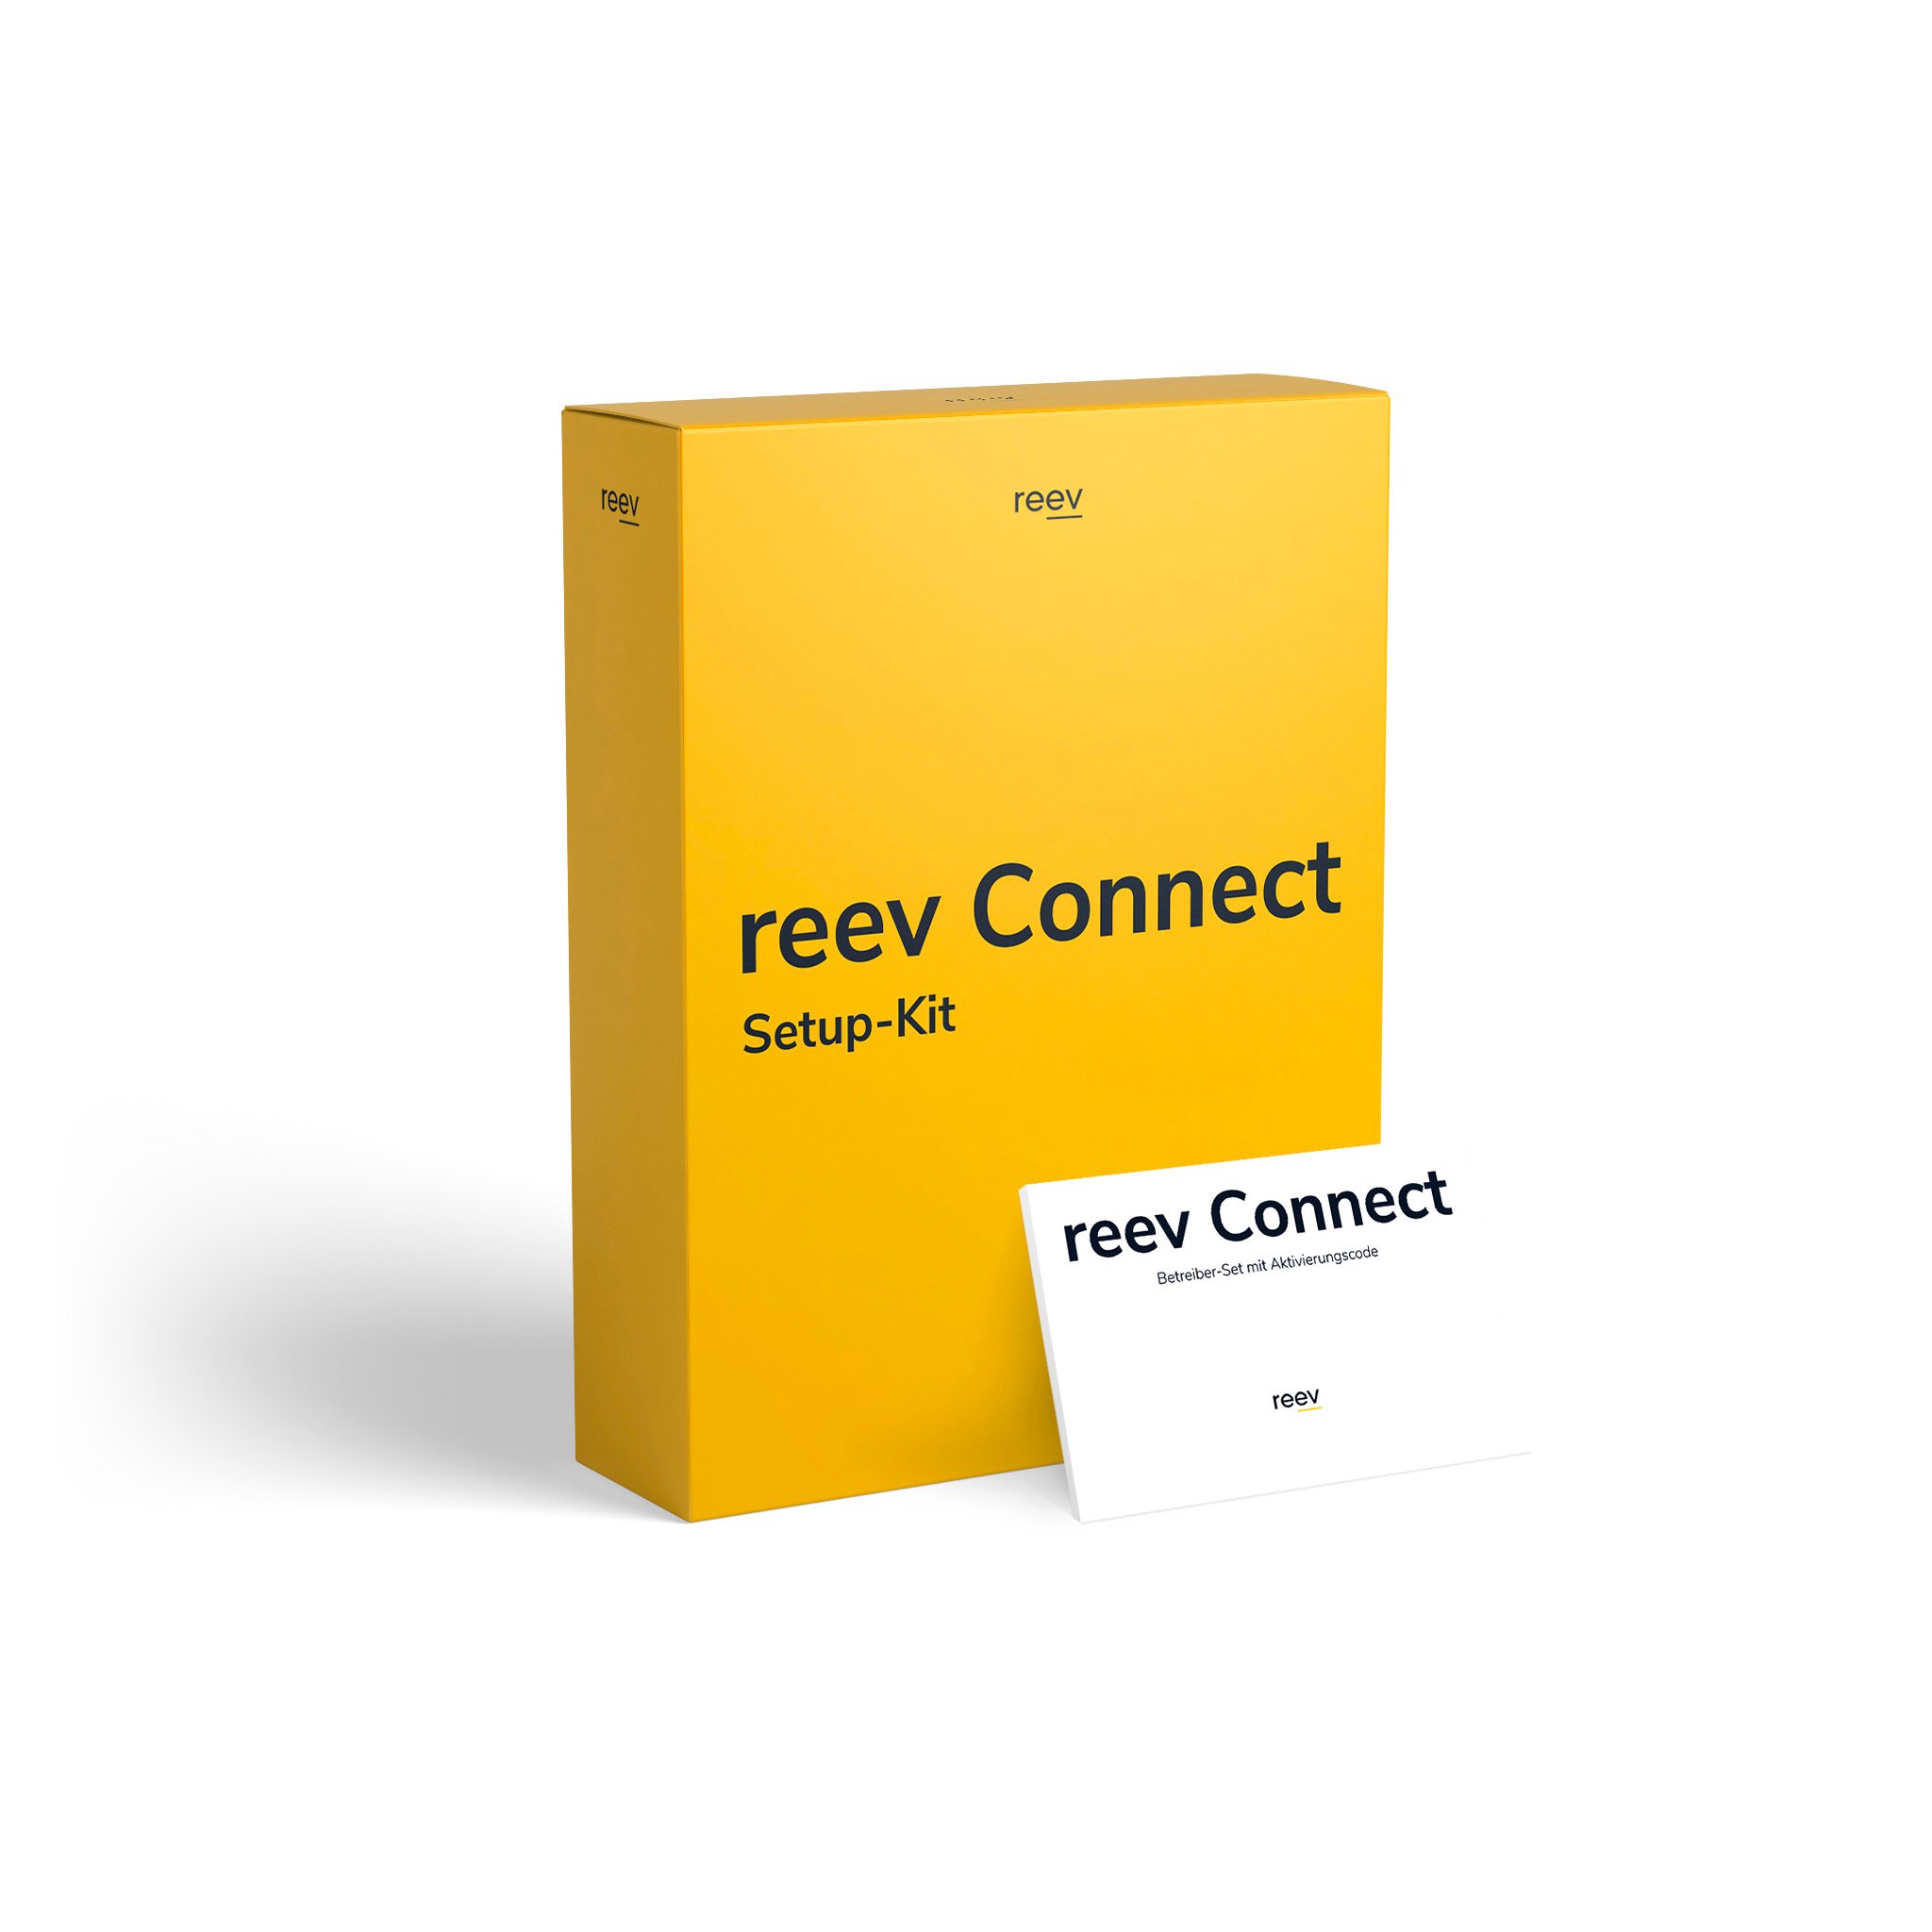 reev connect Setup-Kit